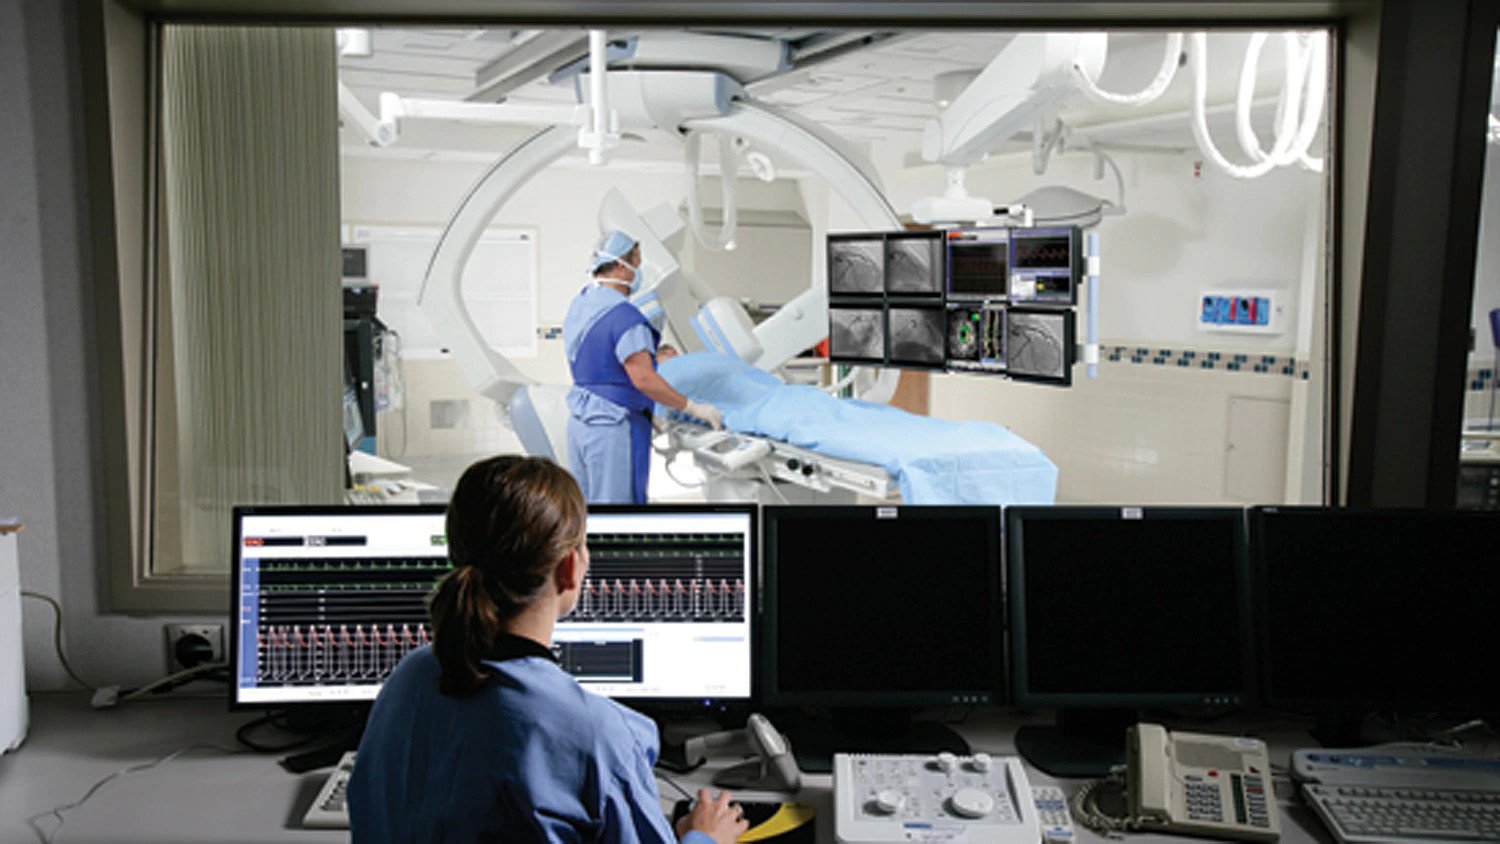 Medical imaging system